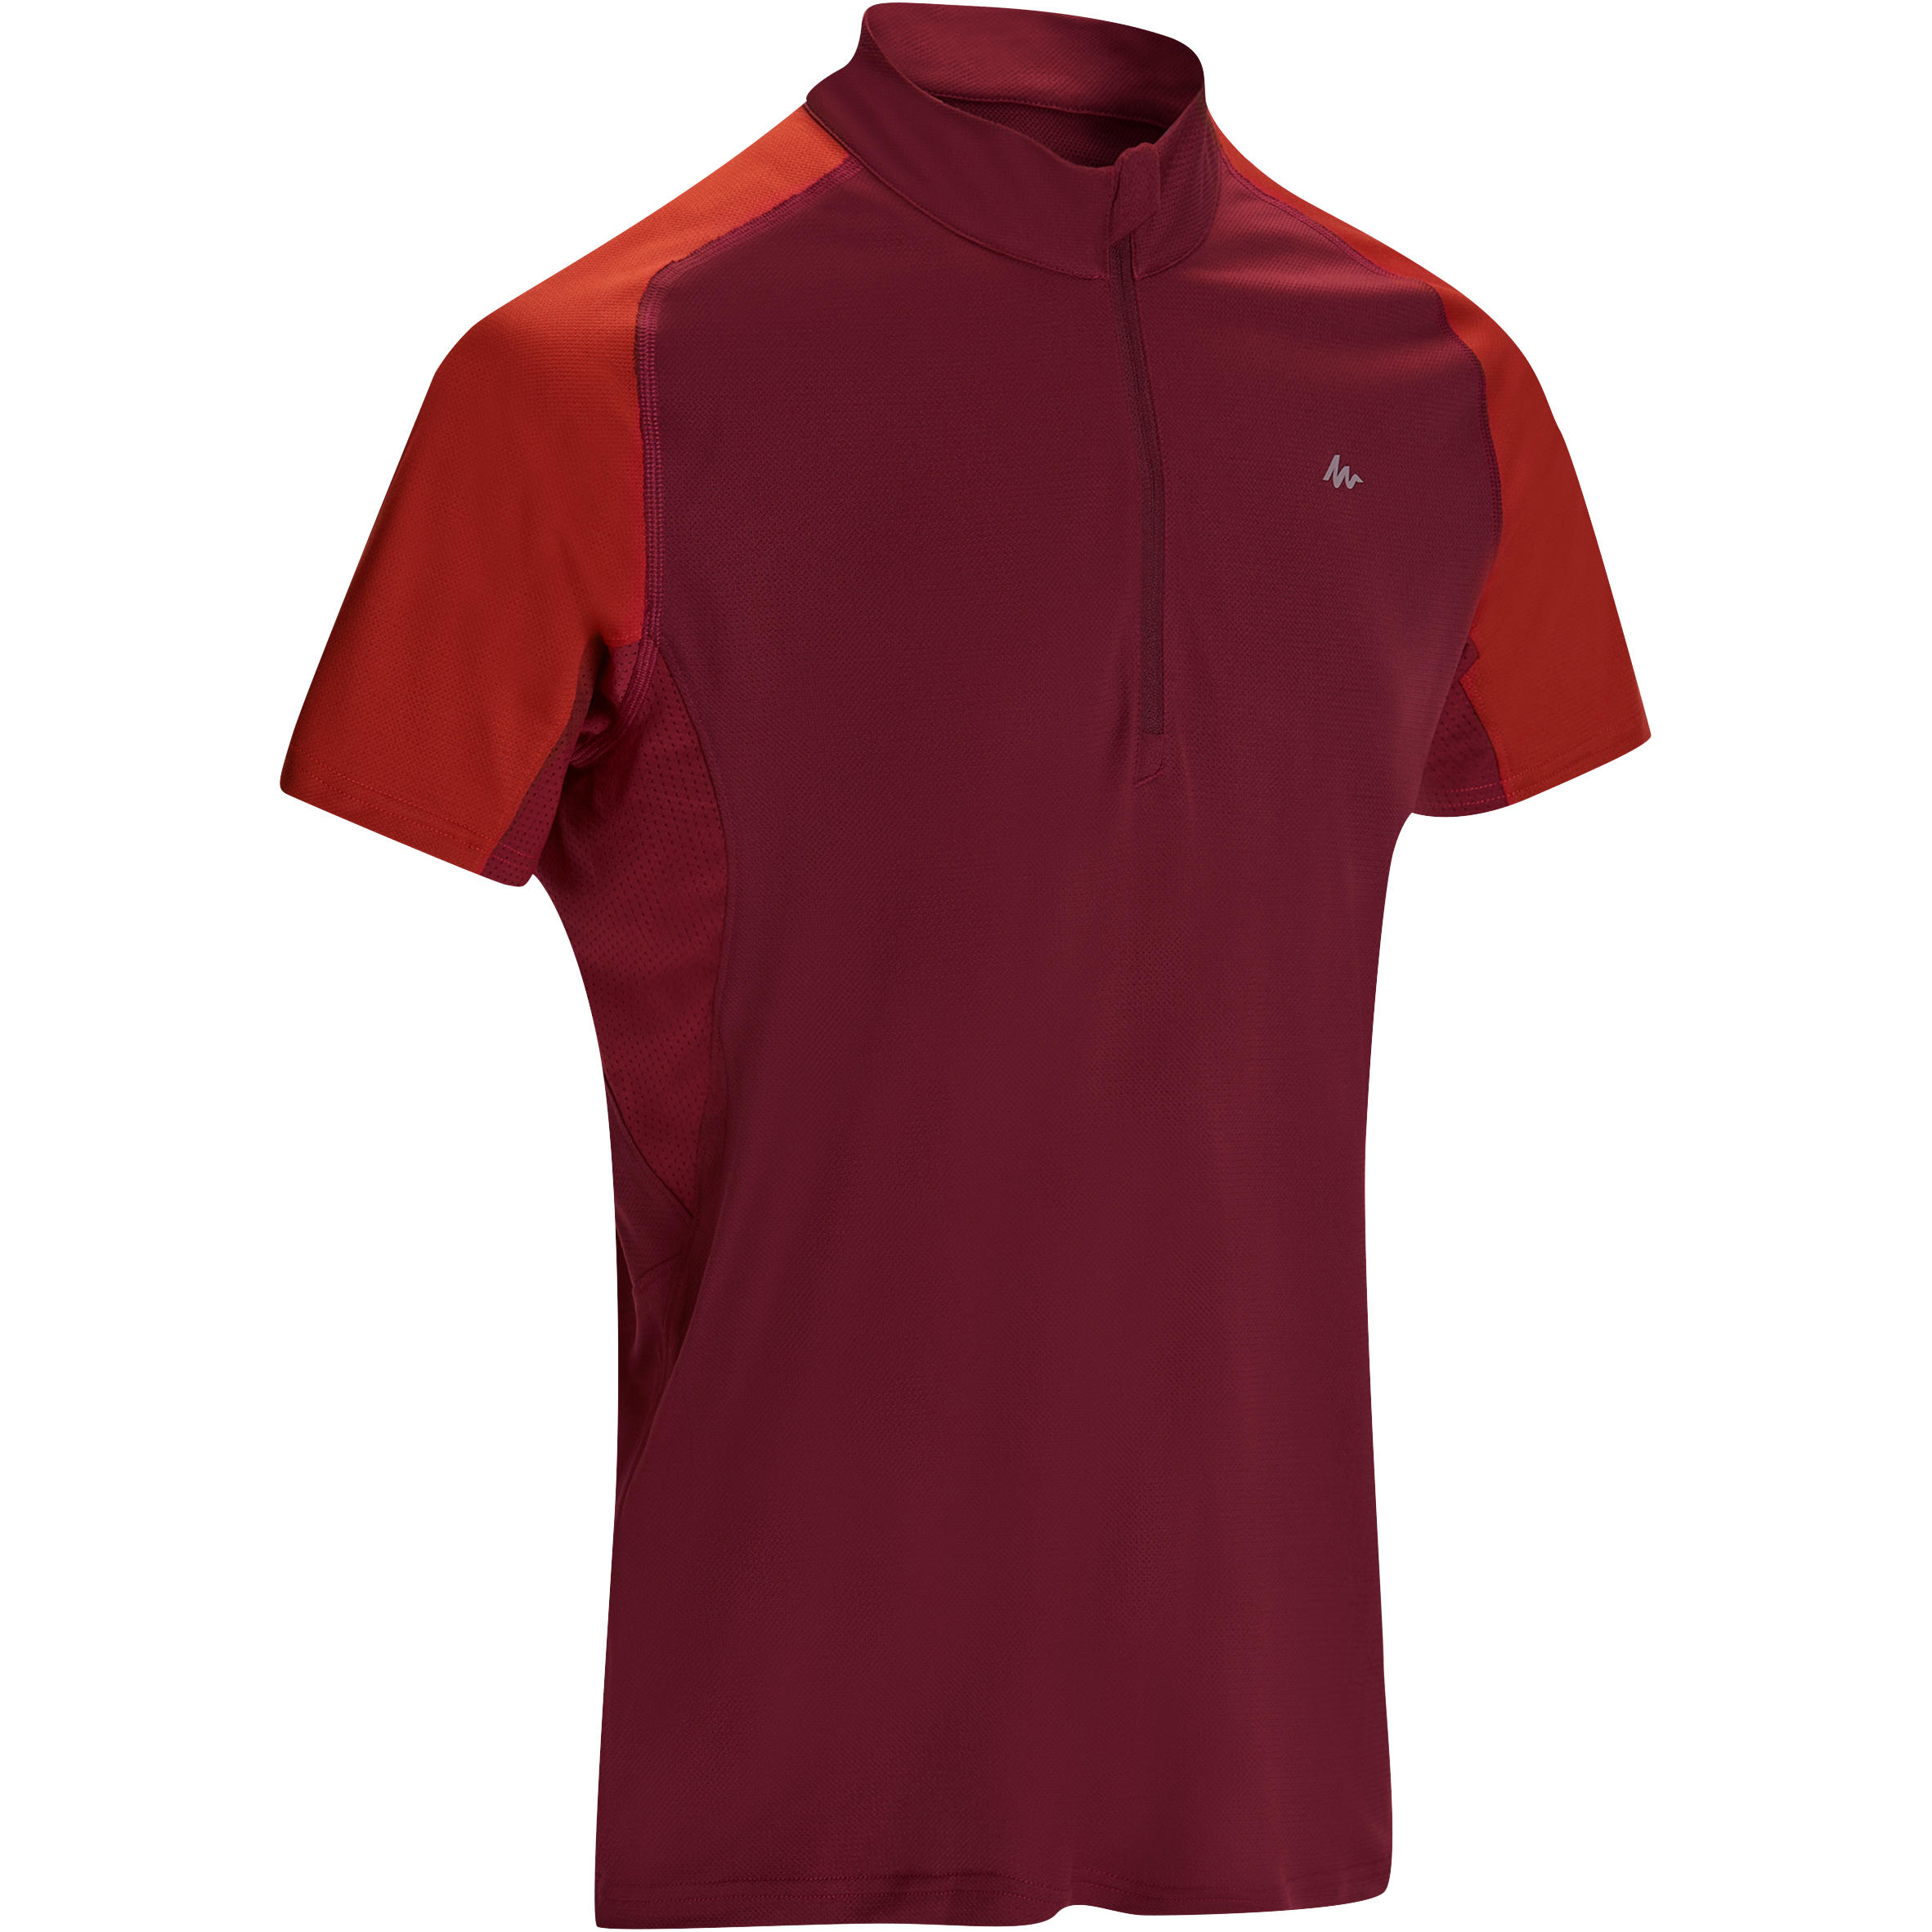 QUECHUA Tech Frech 100 Men's burgundy short-sleeved hiking T-shirt